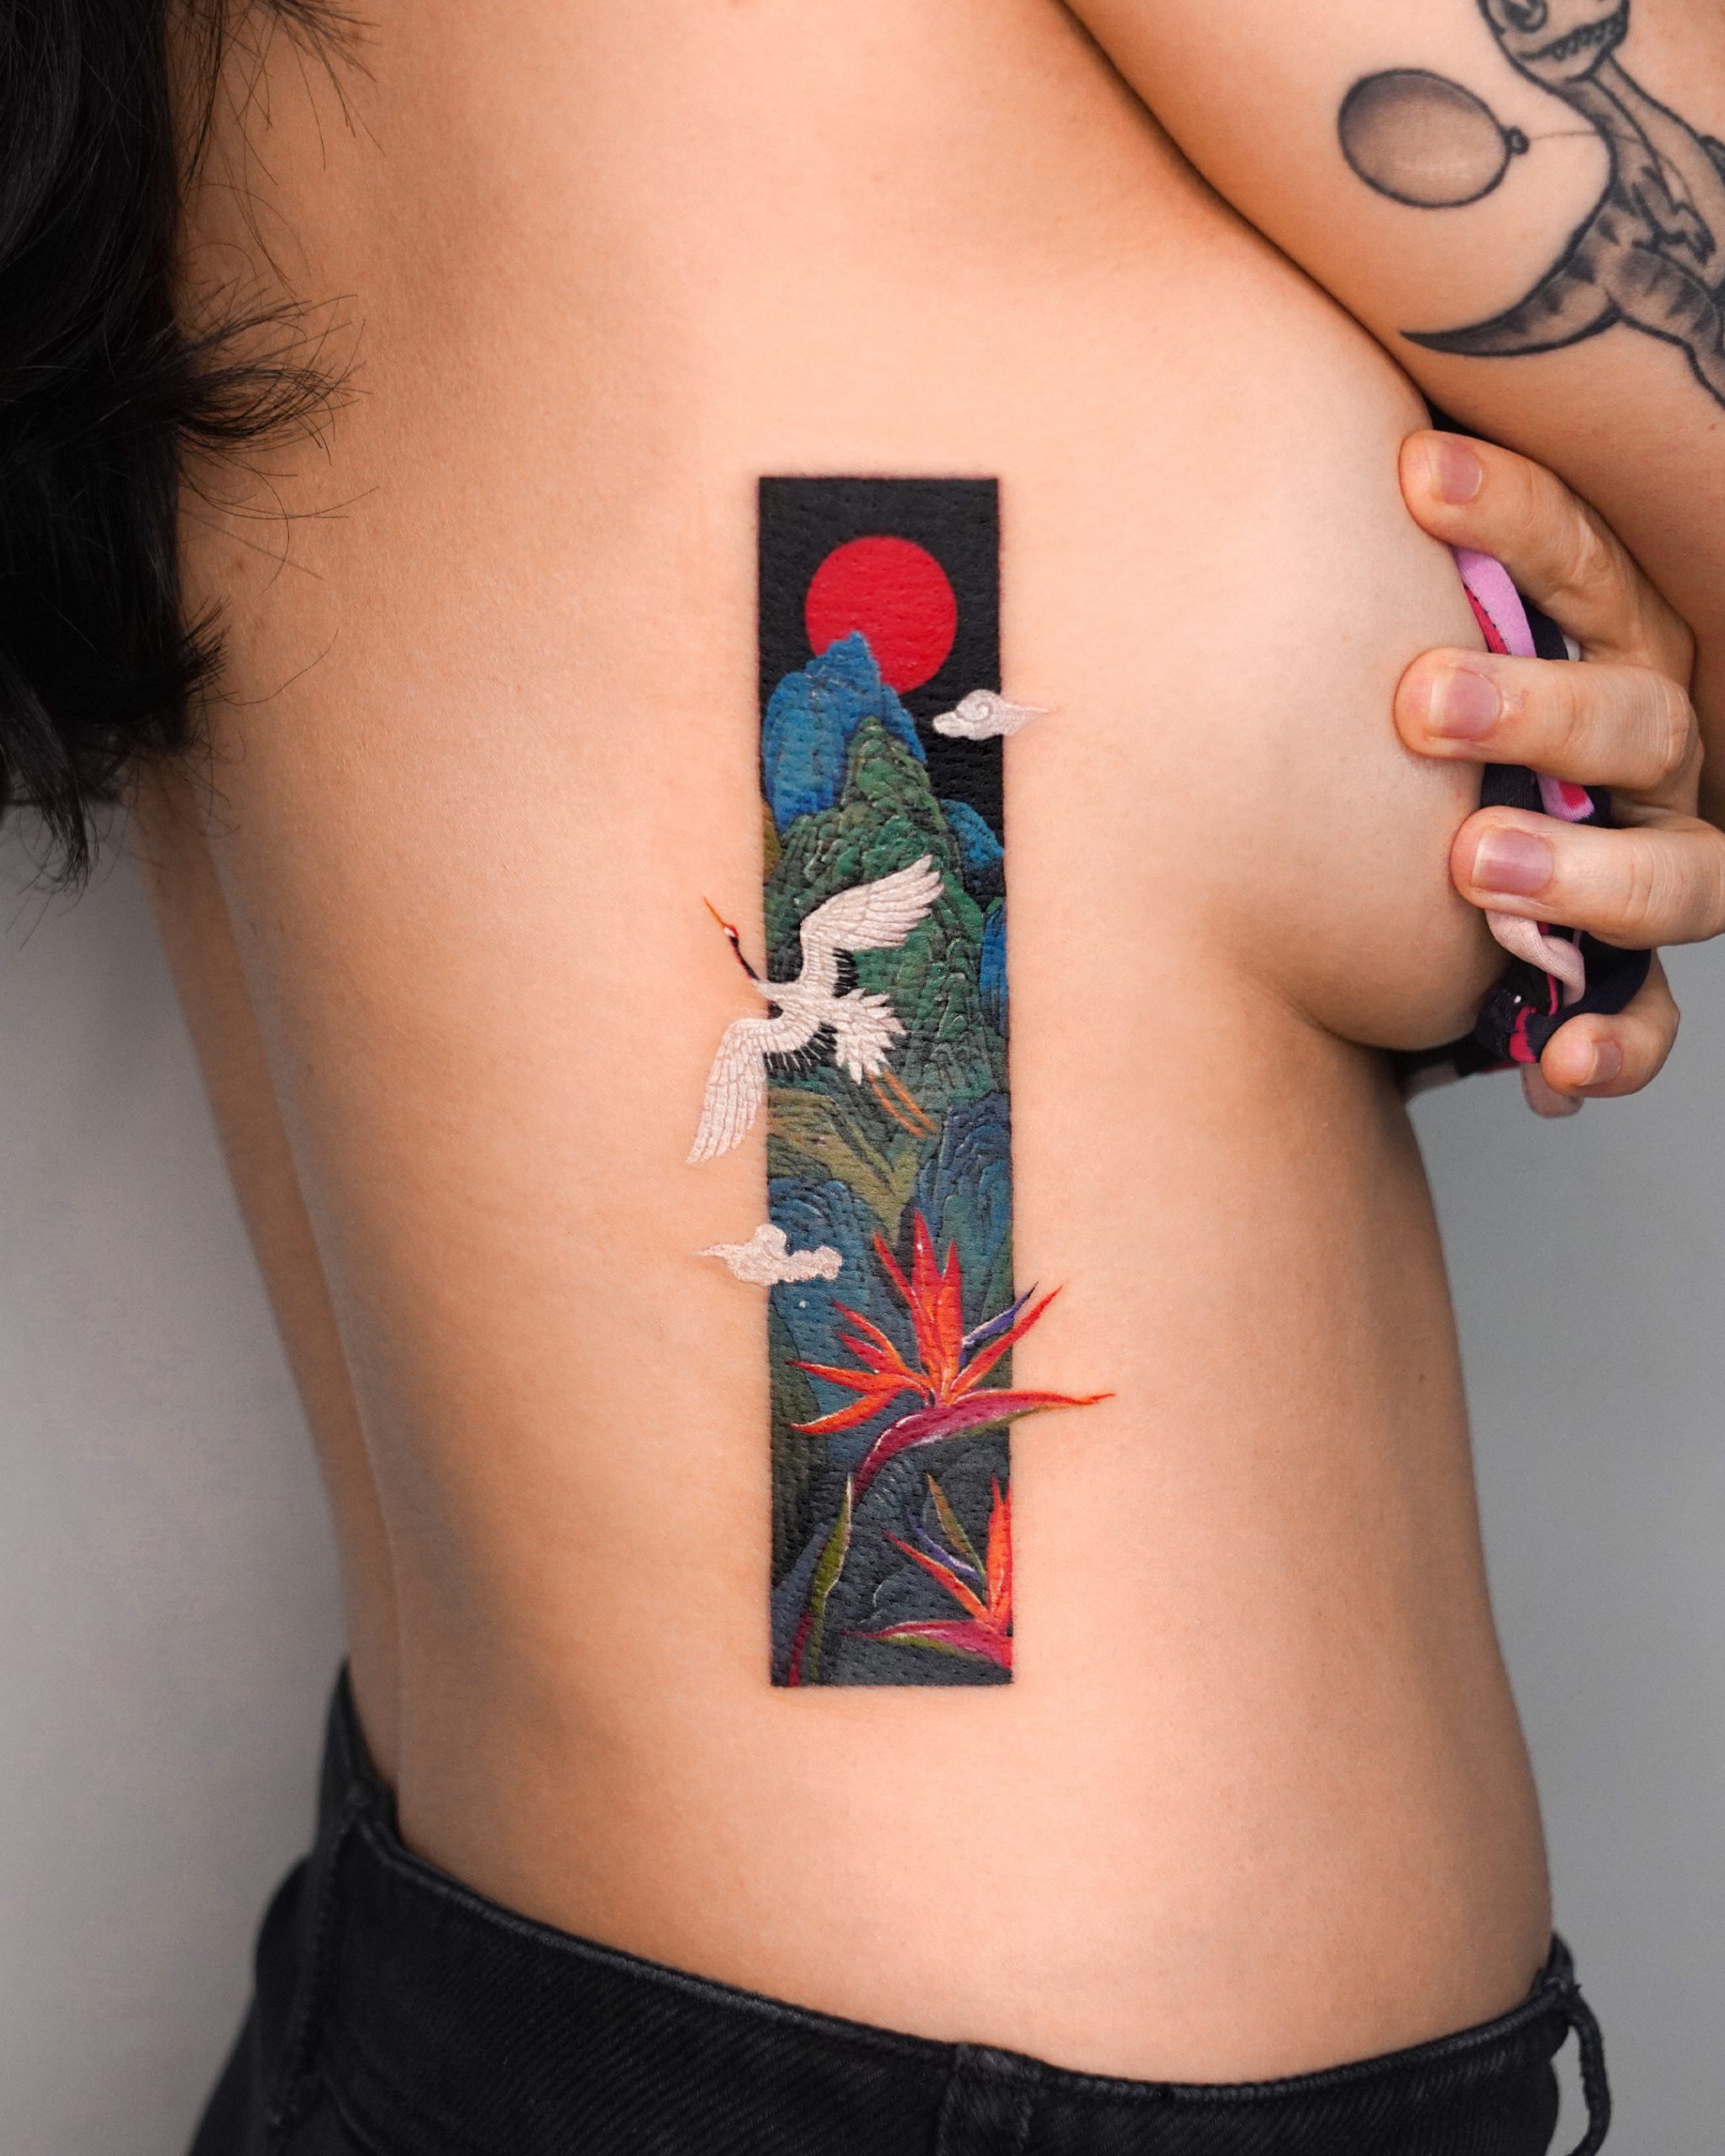 teeny tiny tattoos – Things&Ink